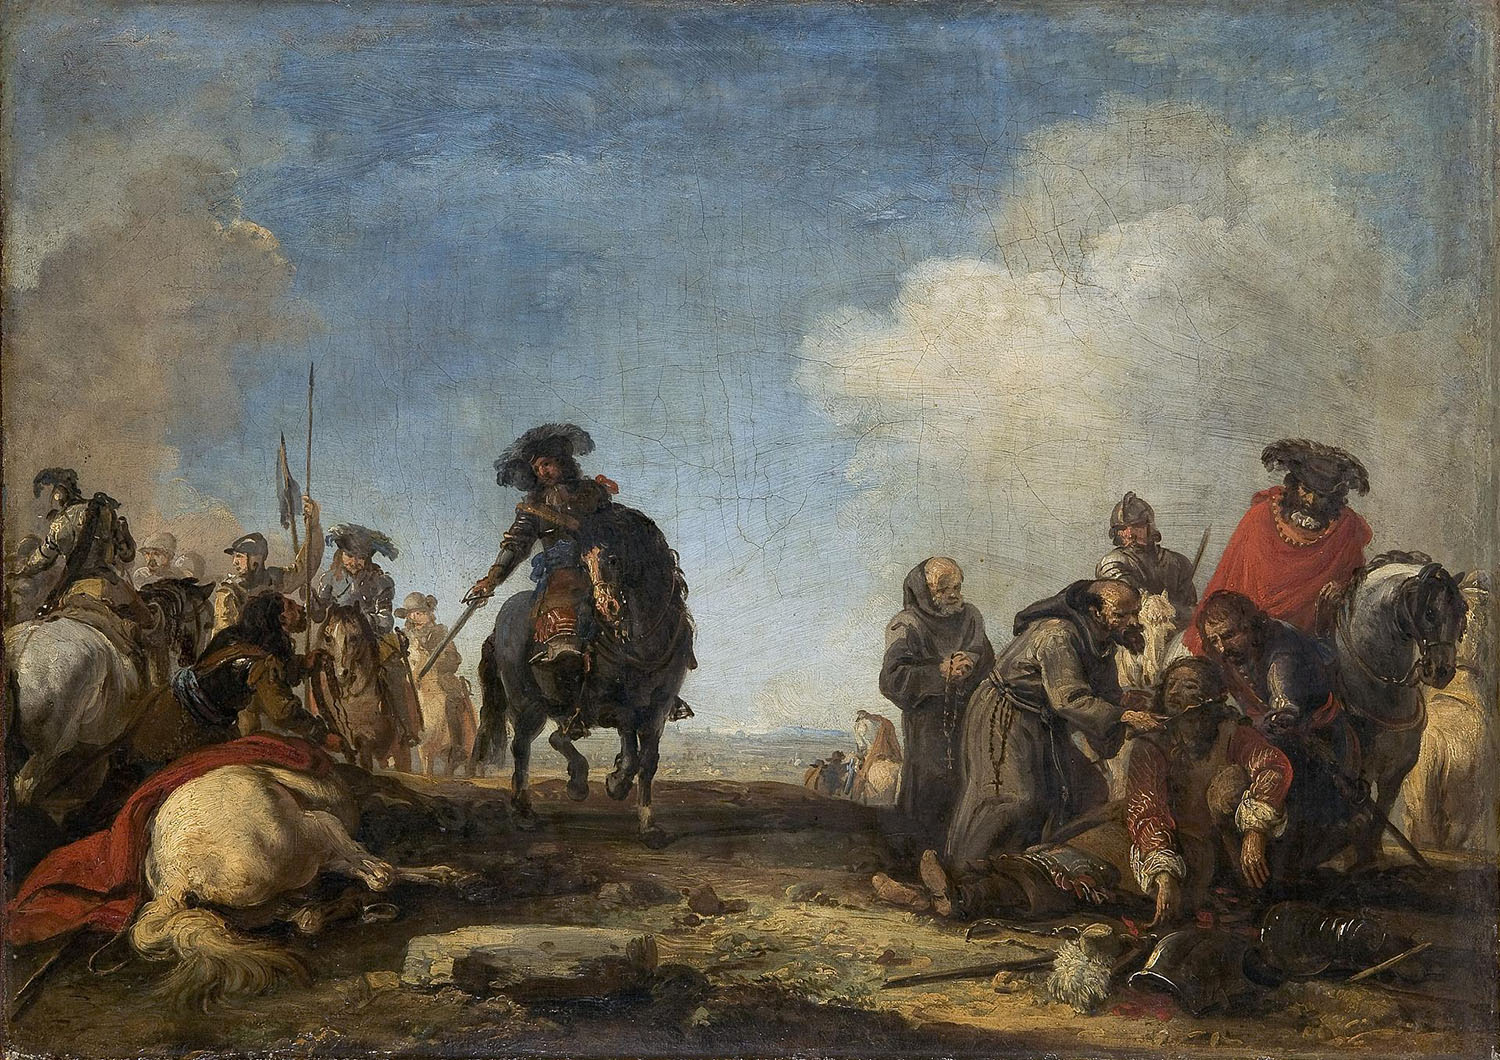 Жак Куртуа (прозванный Бургиньон). "После сражения". Вторая половина XVII века.